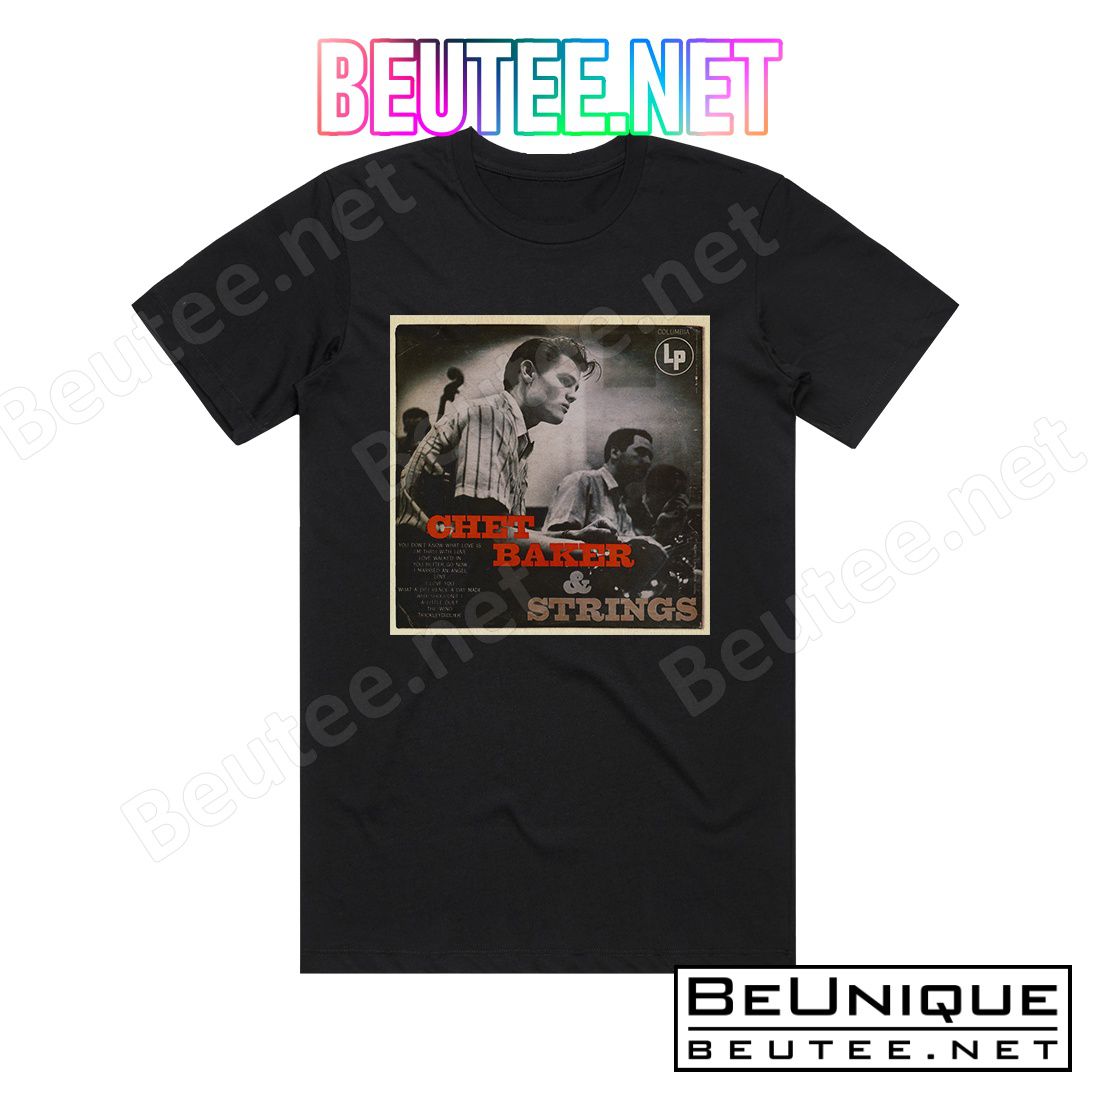 Chet Baker Chet Baker And Strings Album Cover T-Shirt